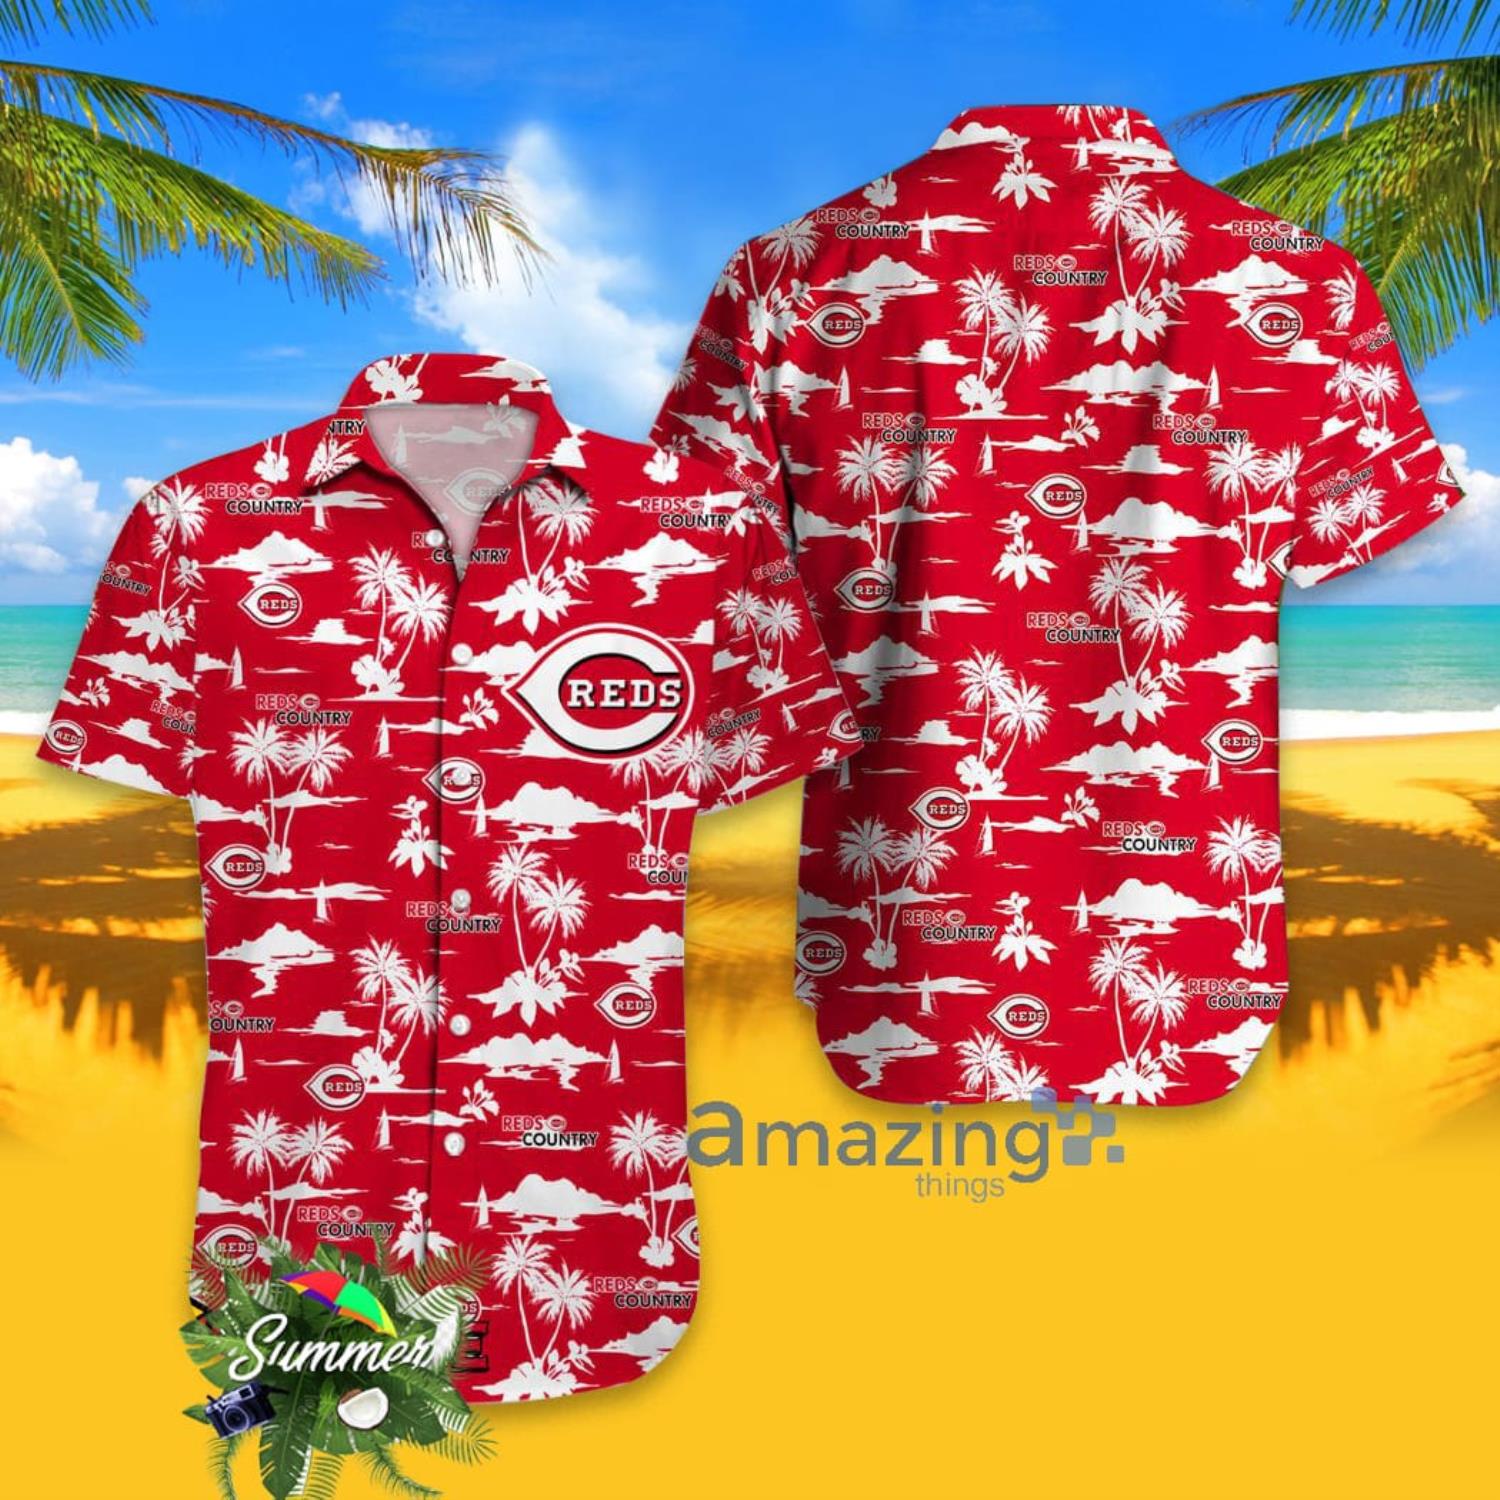 Louisville Cardinals & Minnie Mouse Hawaiian Shirt - Hot Sale 2023